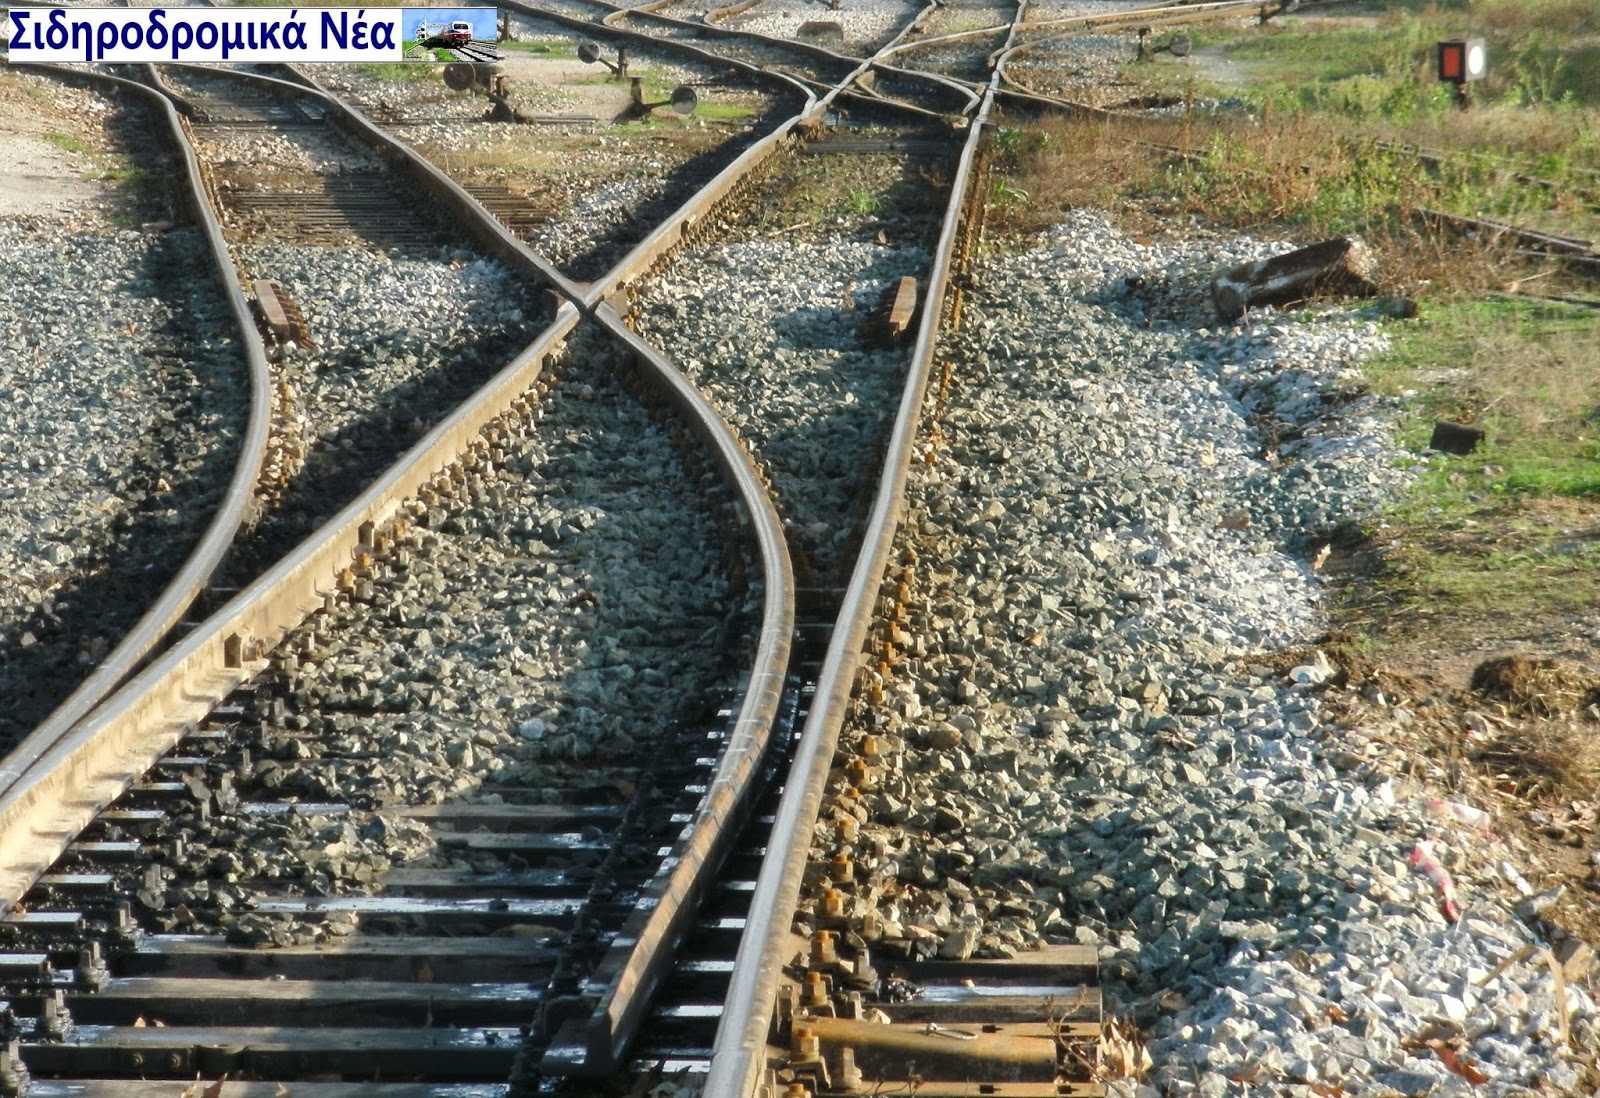 Σύνδεση του λιμανιού Βόλου με το σιδηροδρομικό δίκτυο της χώρας ζητά από τον Υπ. Υποδομών ο Σύνδεσμος Βιομηχανιών Θεσσαλίας και Στερεάς Ελλάδος - Φωτογραφία 1